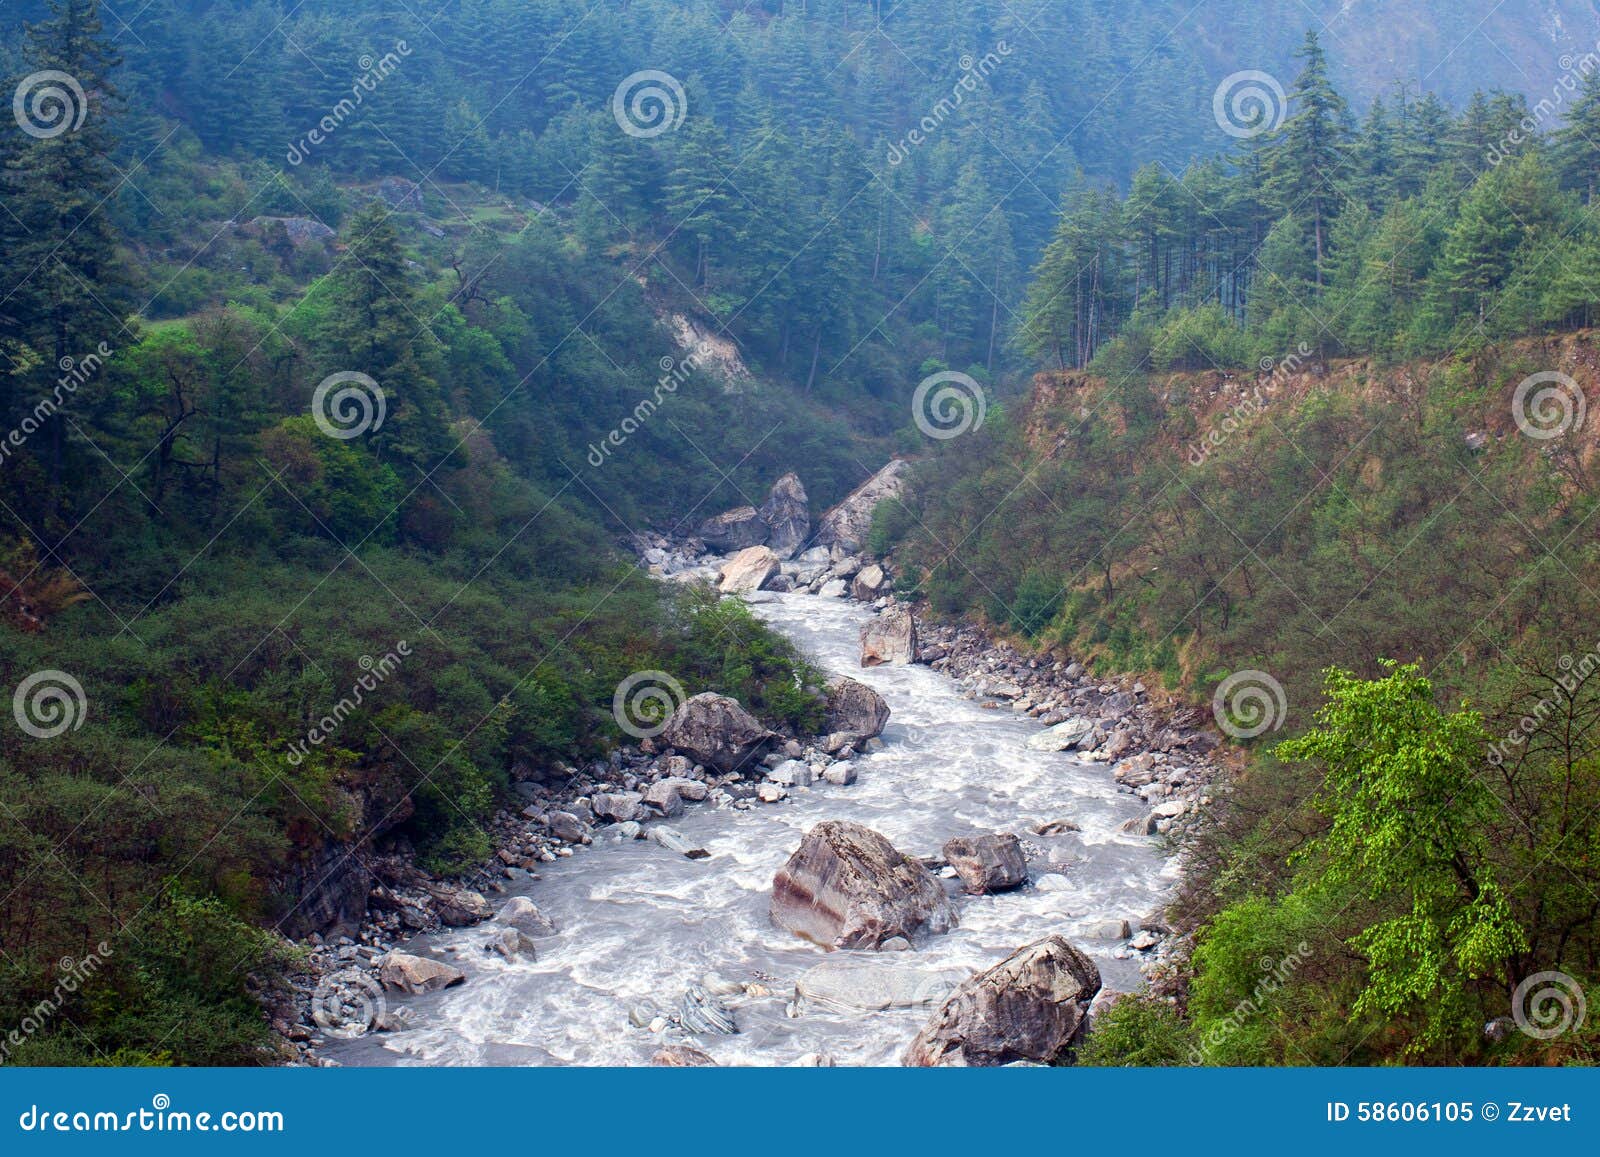 kali gandaki river, nepal